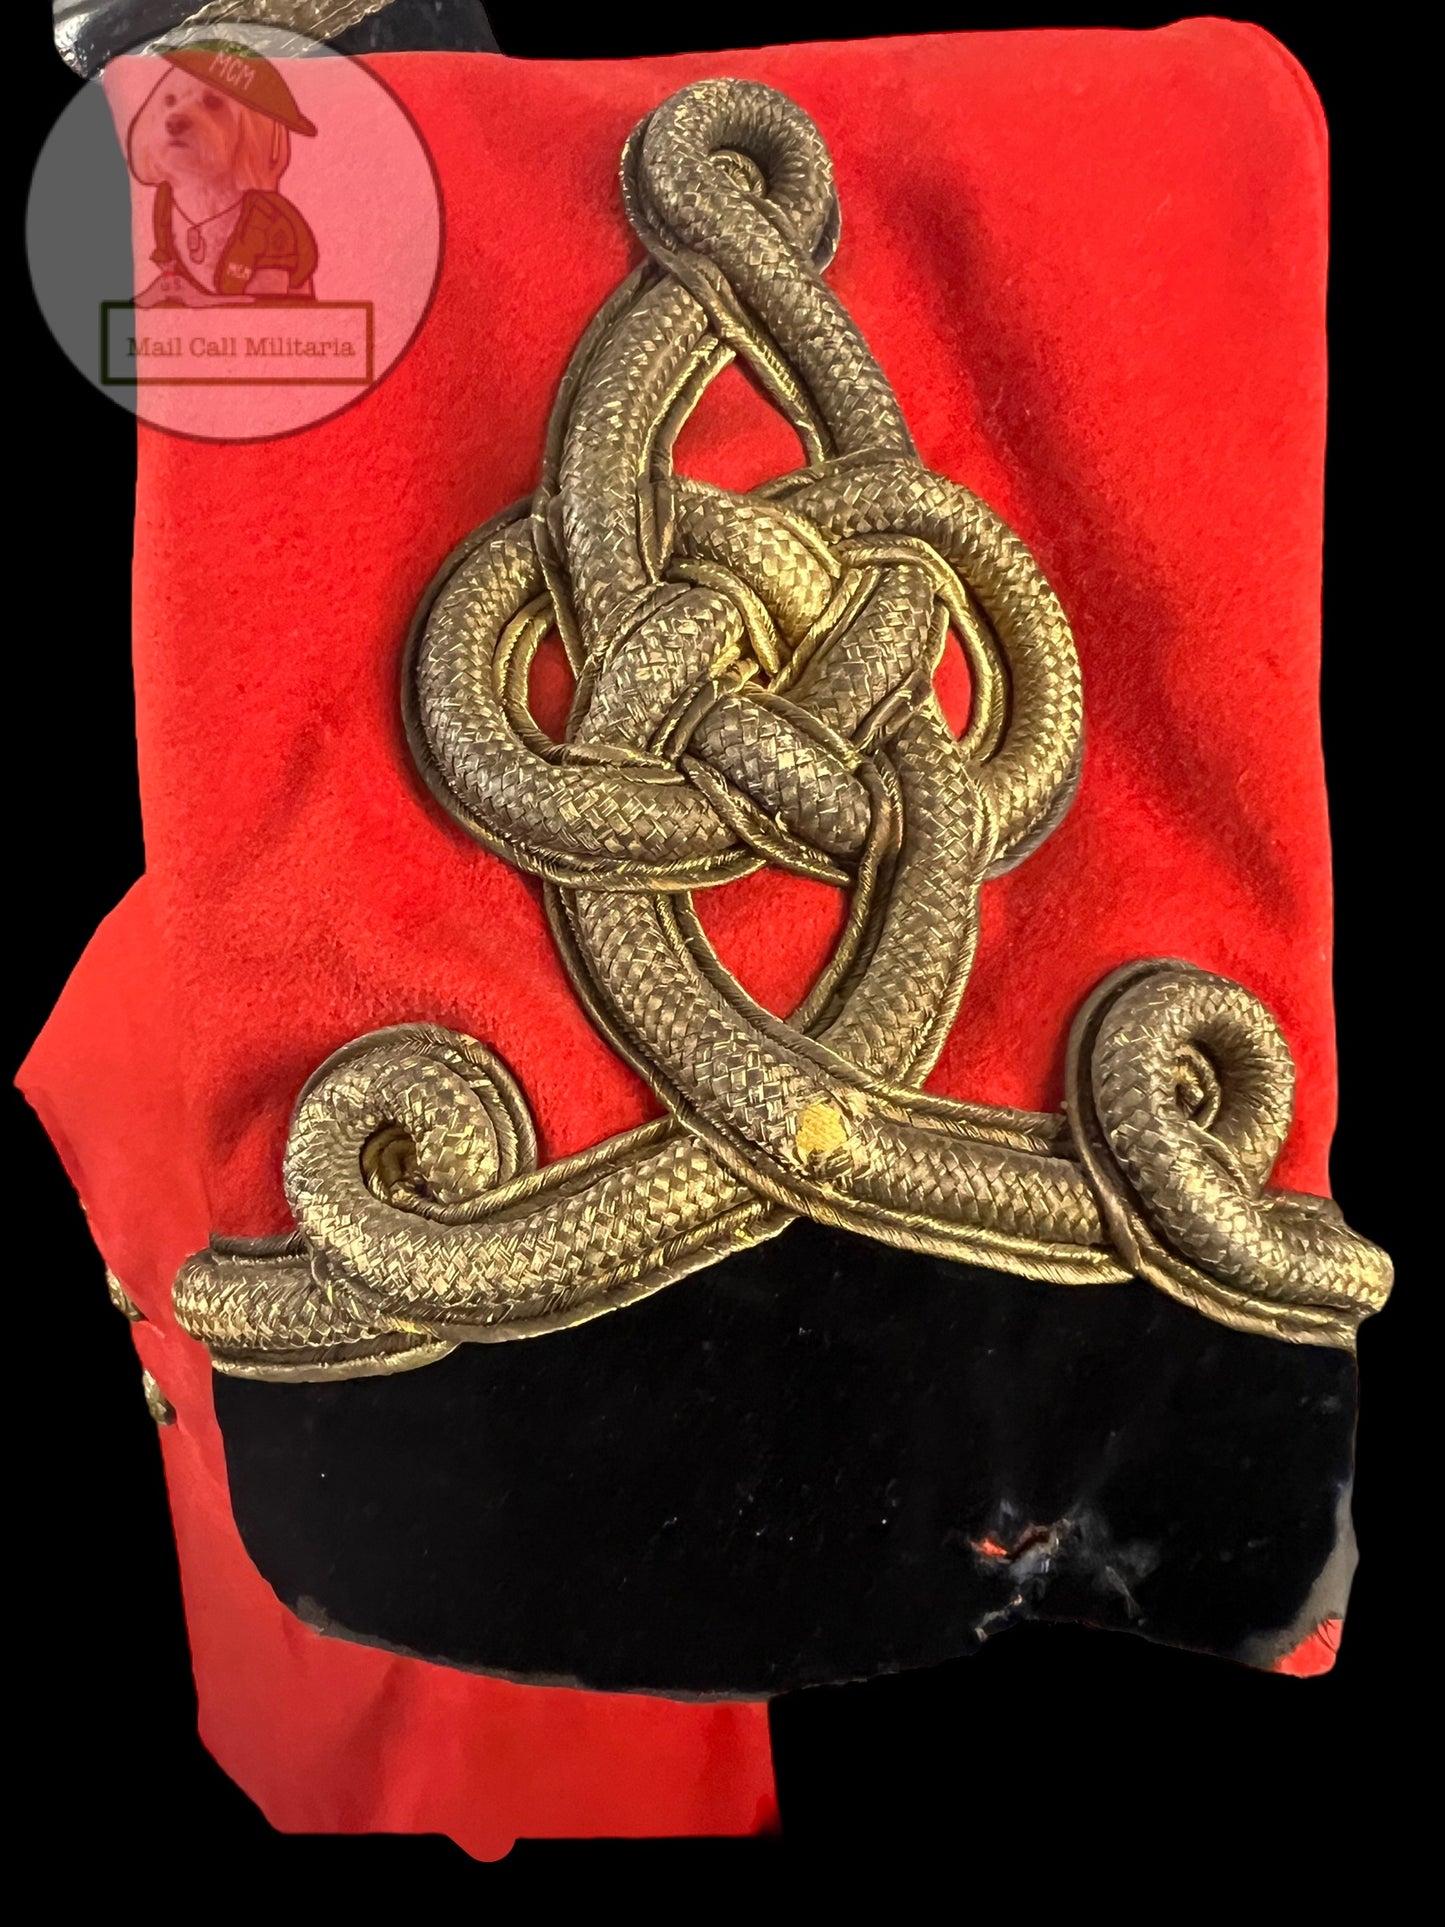 1870s-1880 4th Royal Irish Dragoon Guards LTs Tunic